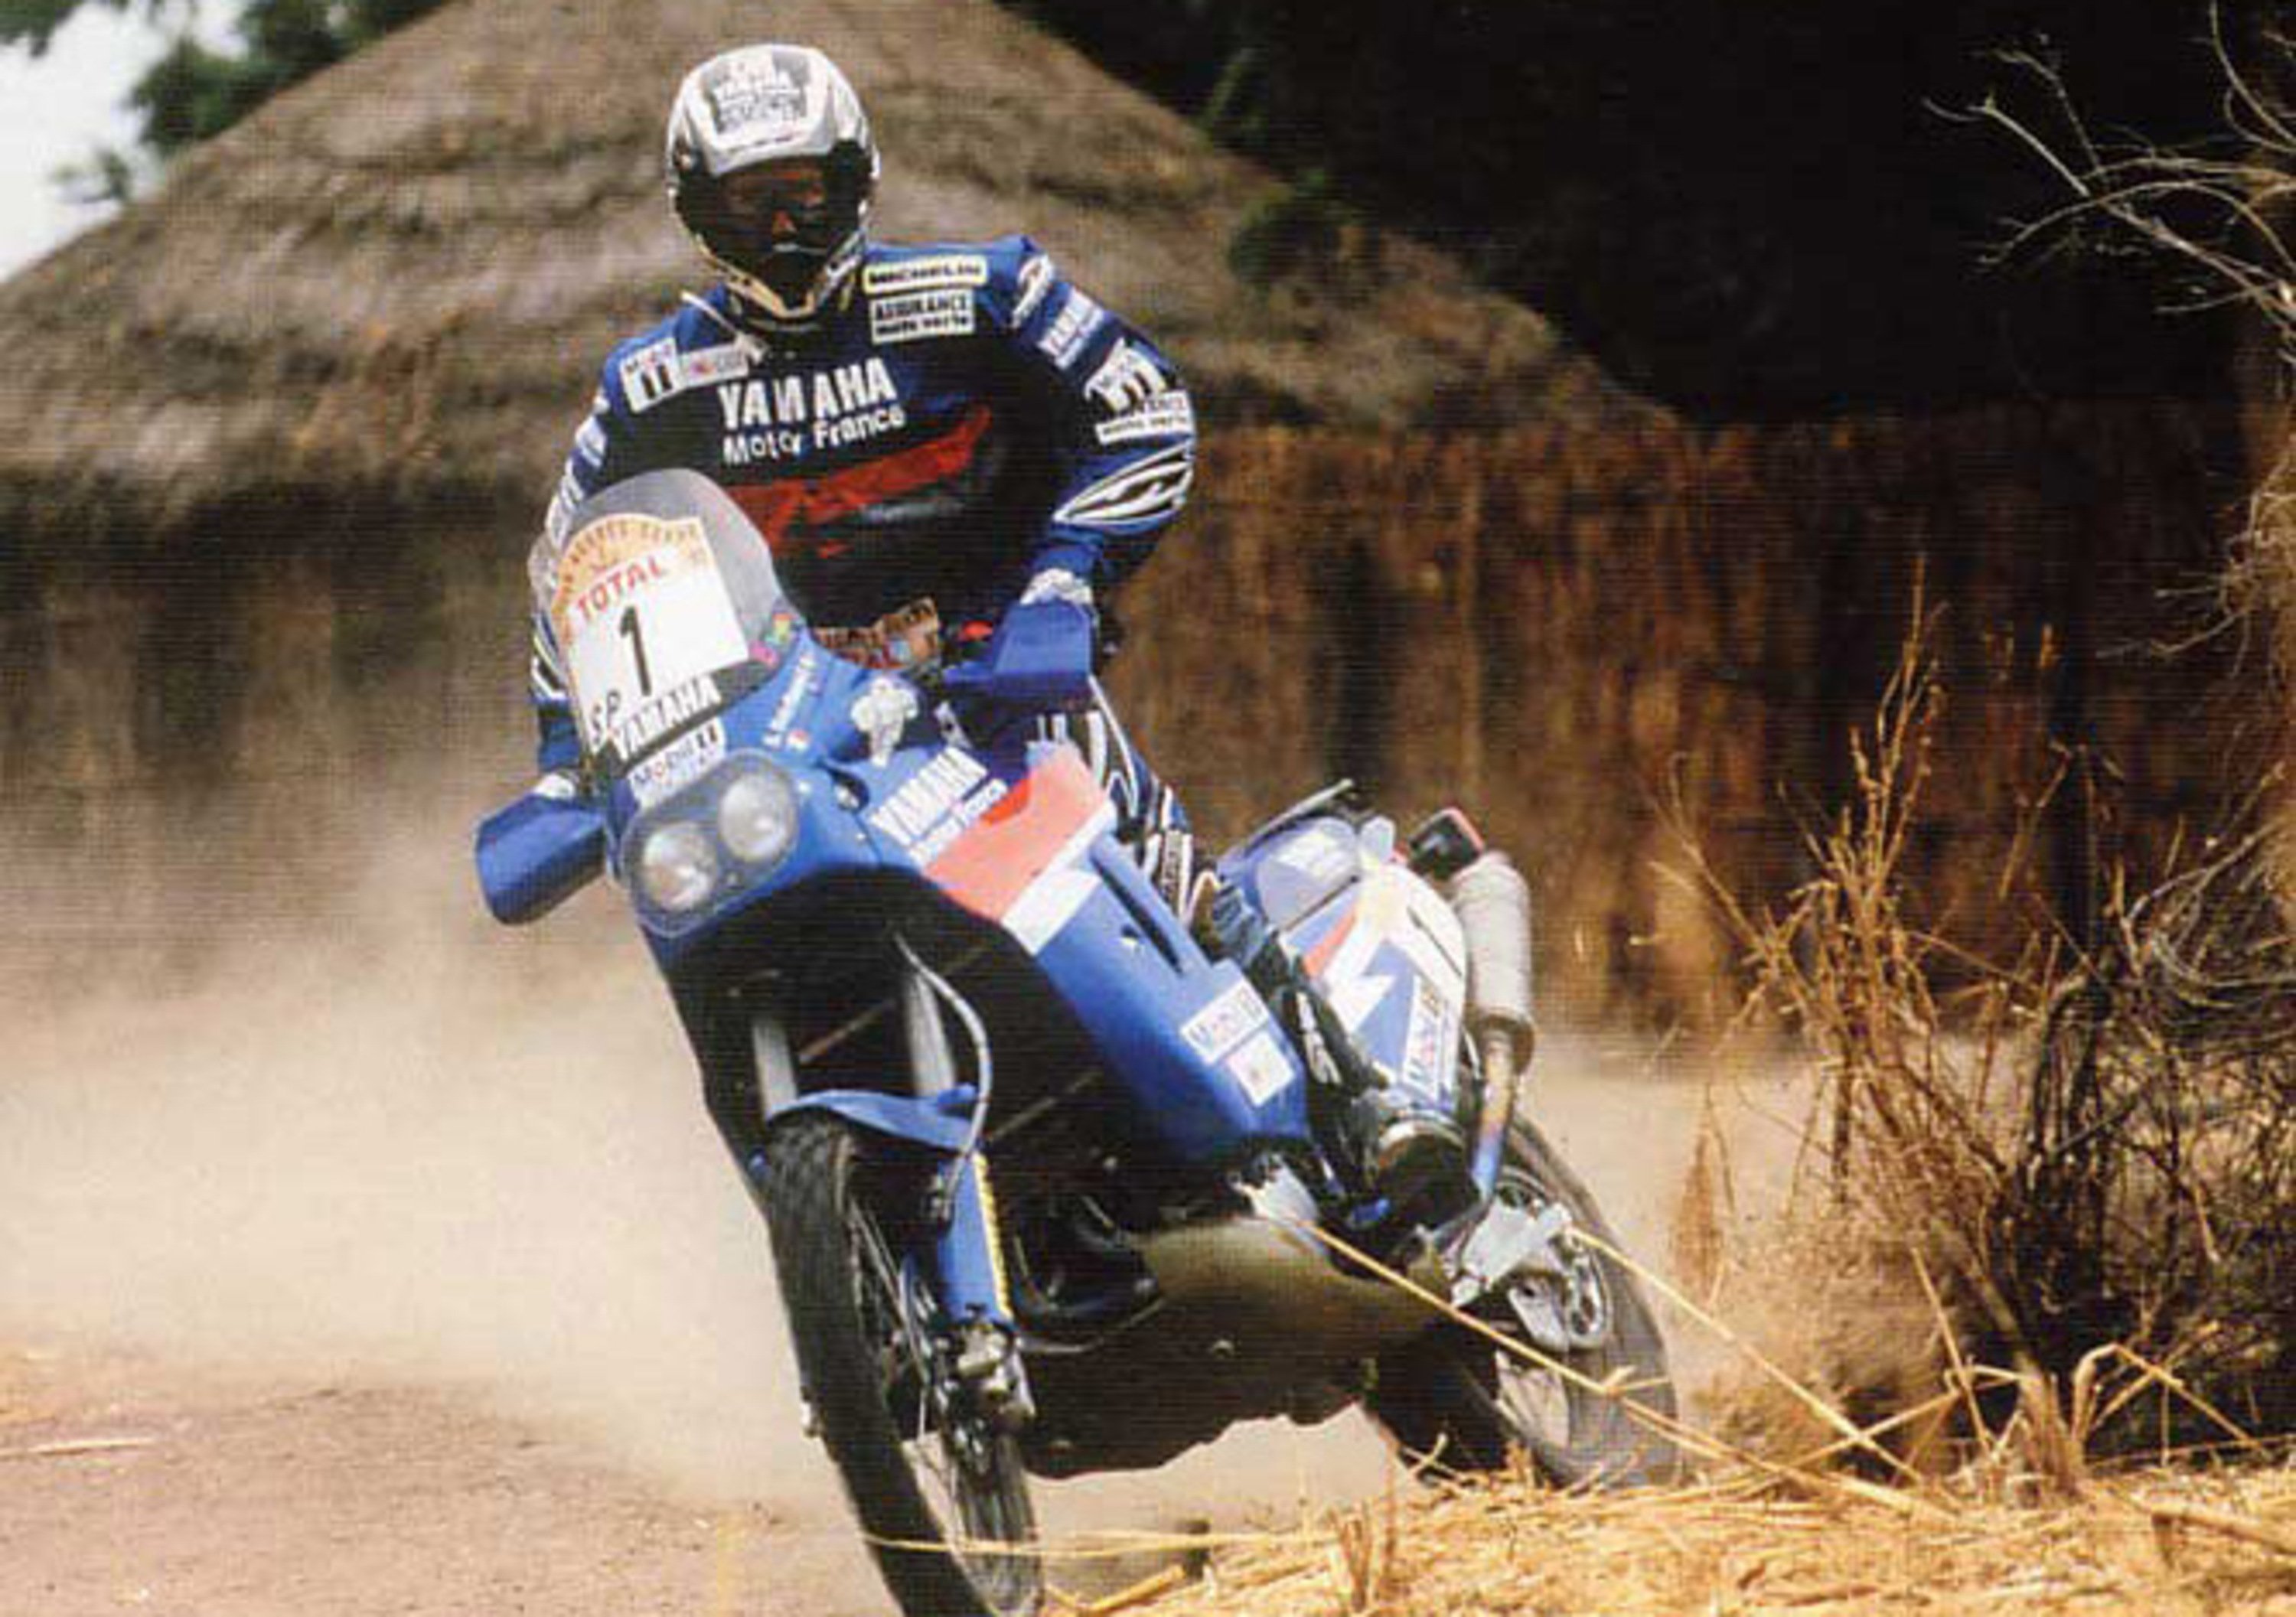 20 anni di sport. Dakar 1997: Dakar-Agades-Dakar!	